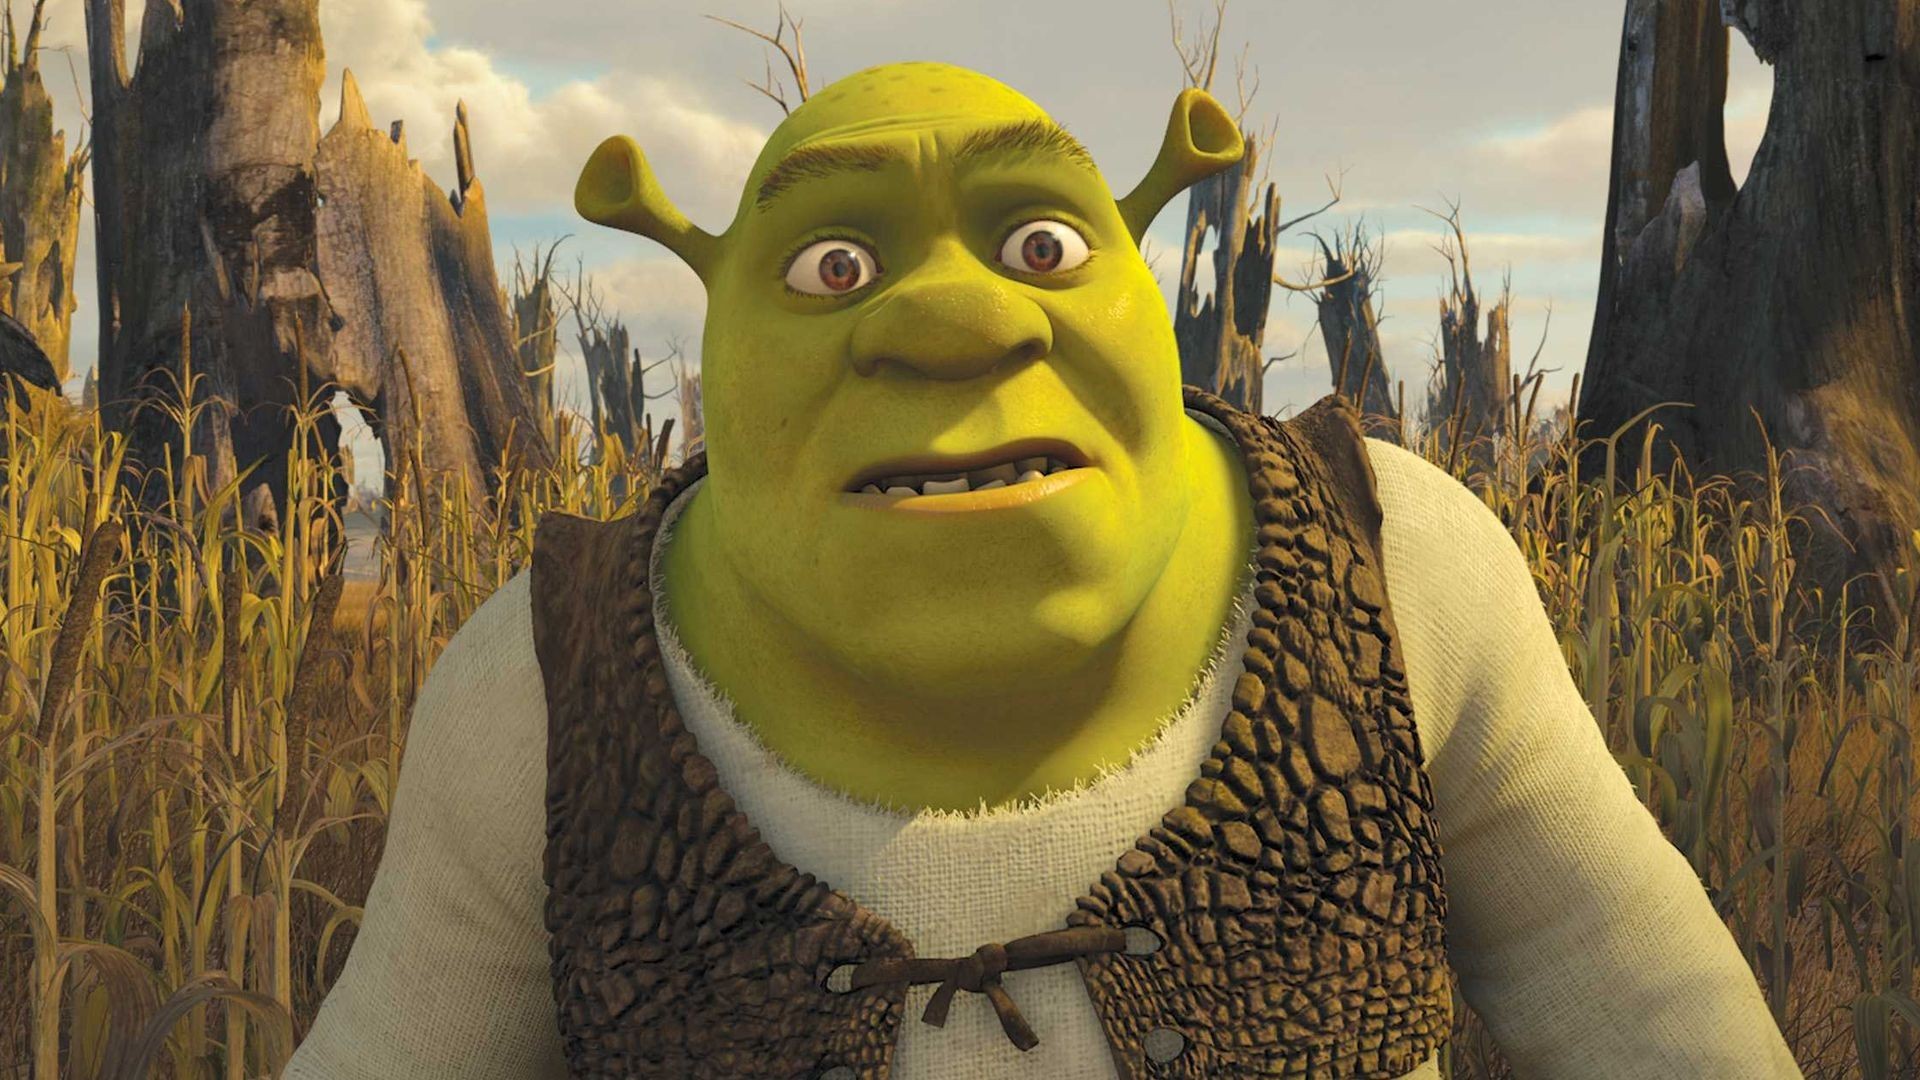 Shrek Forever After HD Wallpaper Background Image